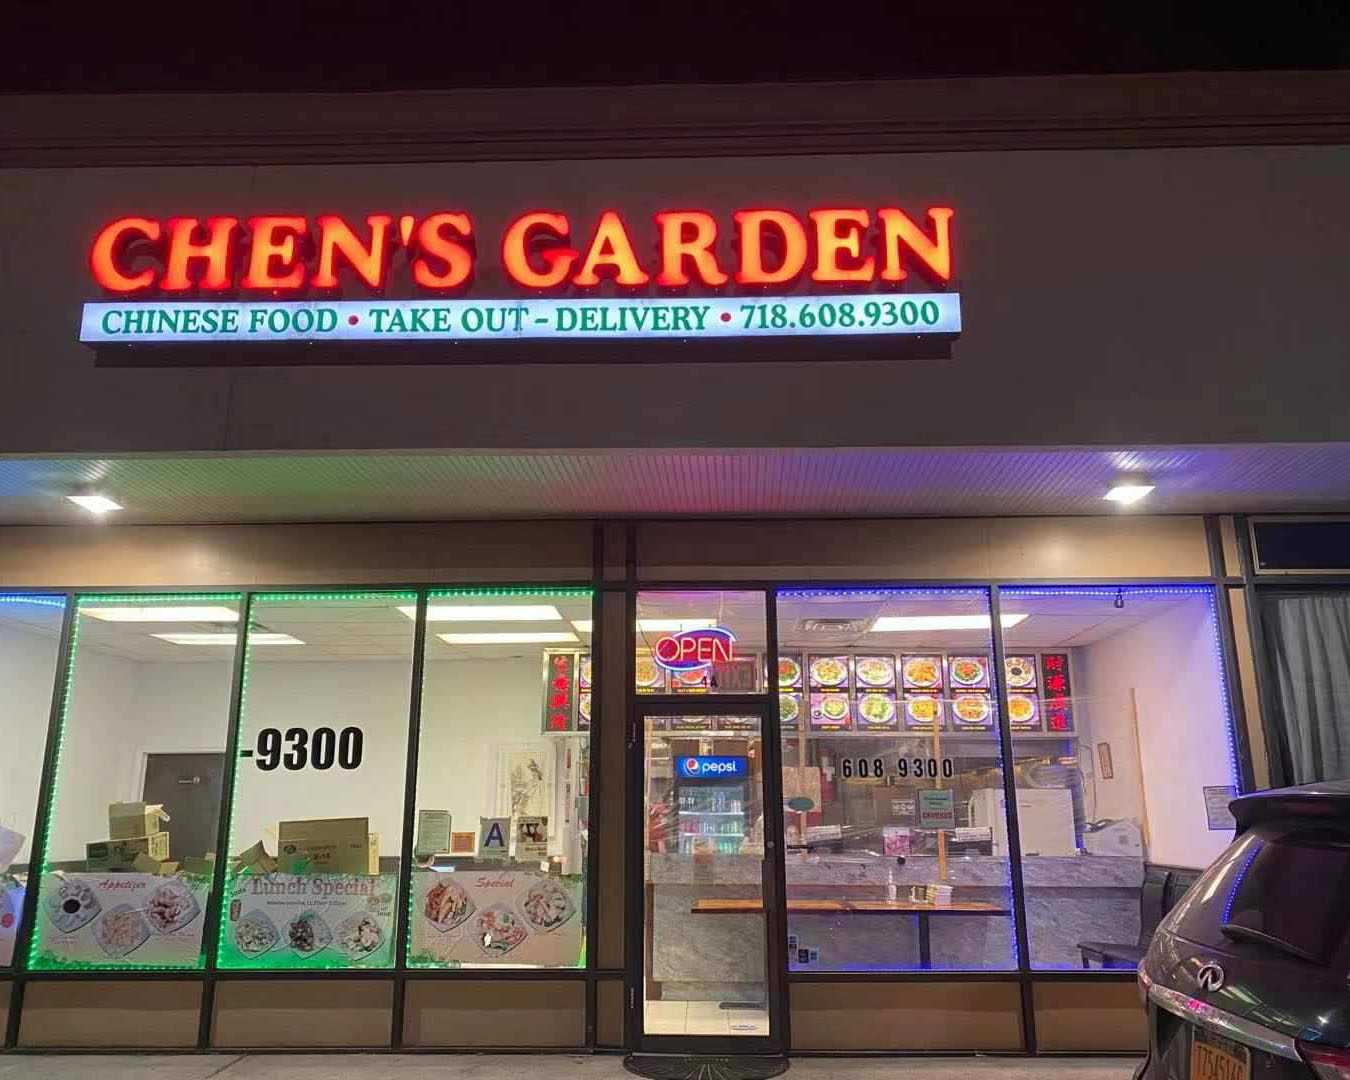 Chens Garden